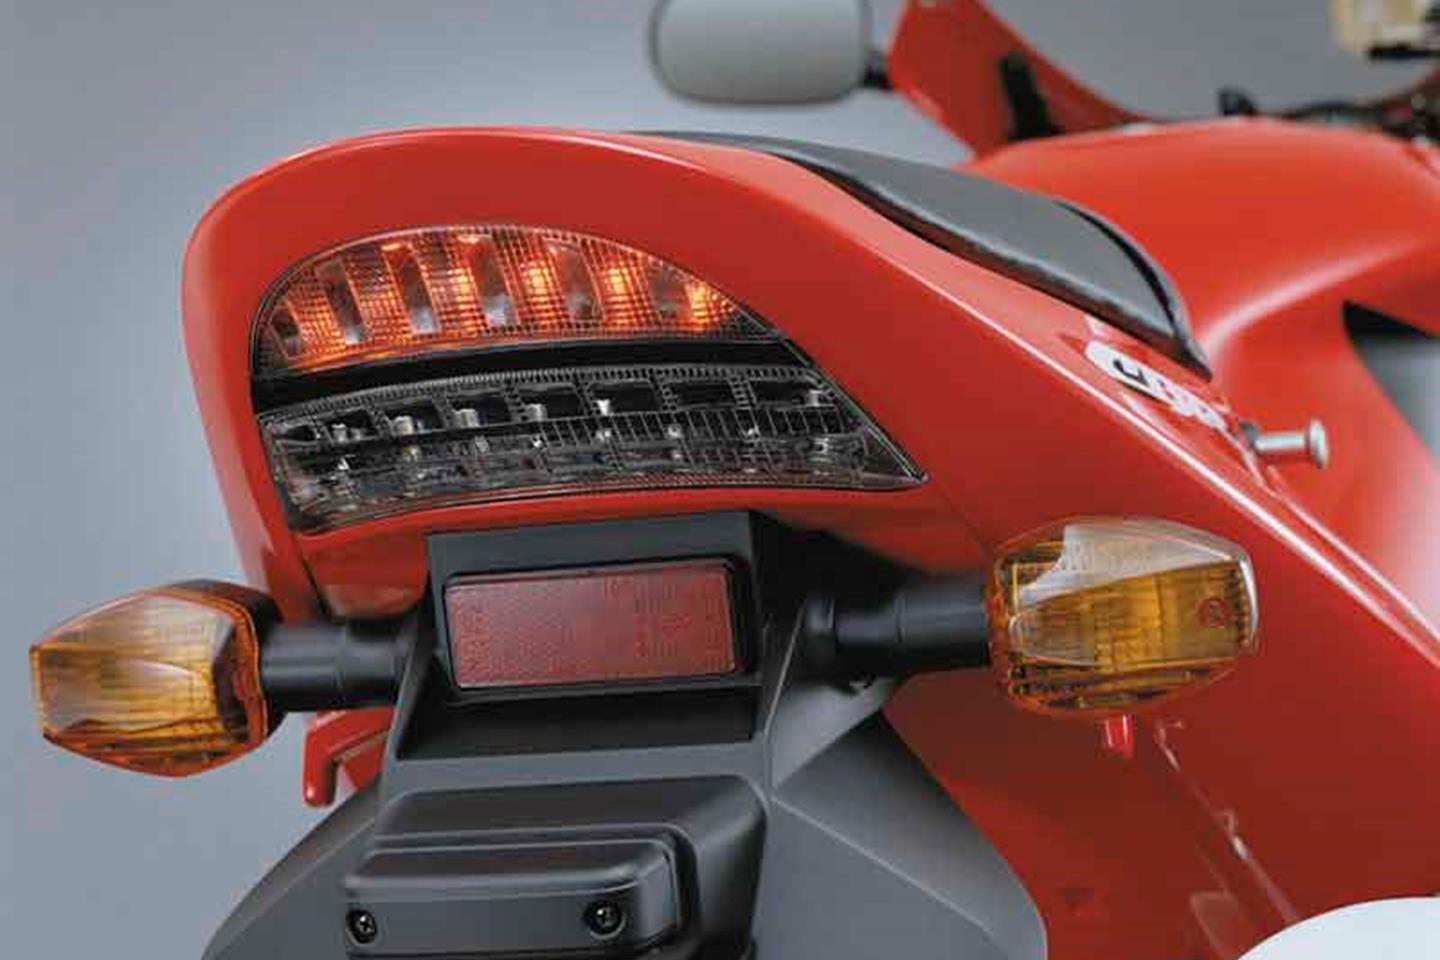 HONDA CBR900RR FIREBLADE (2002-2003) Motorcycle Review